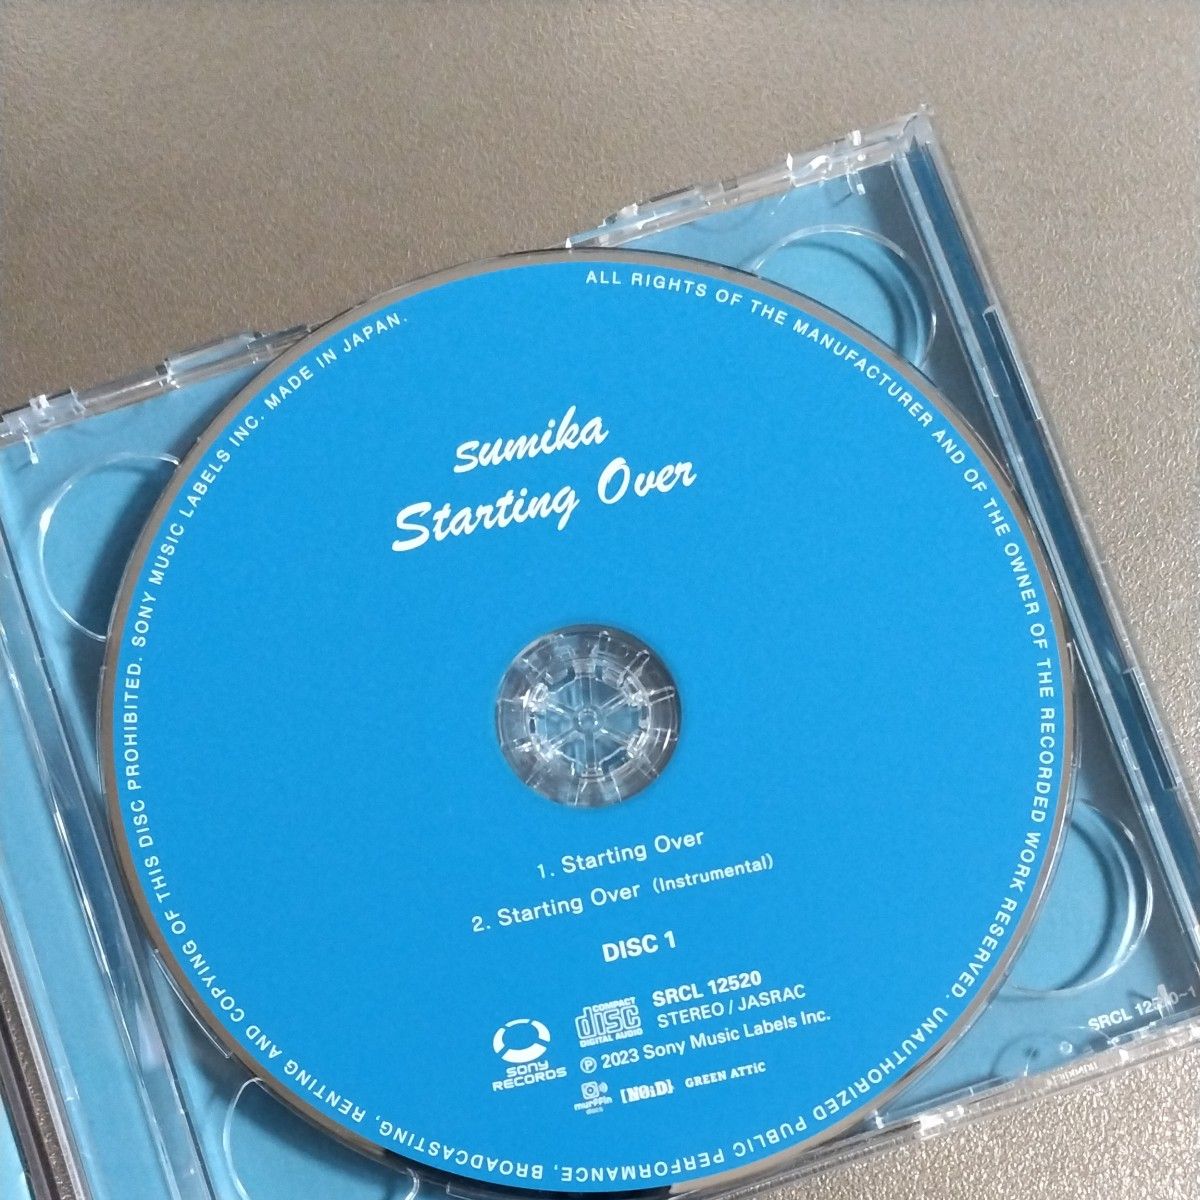 初回生産限定盤 (取) Blu-ray付 sumika CD+Blu-ray/Starting Over